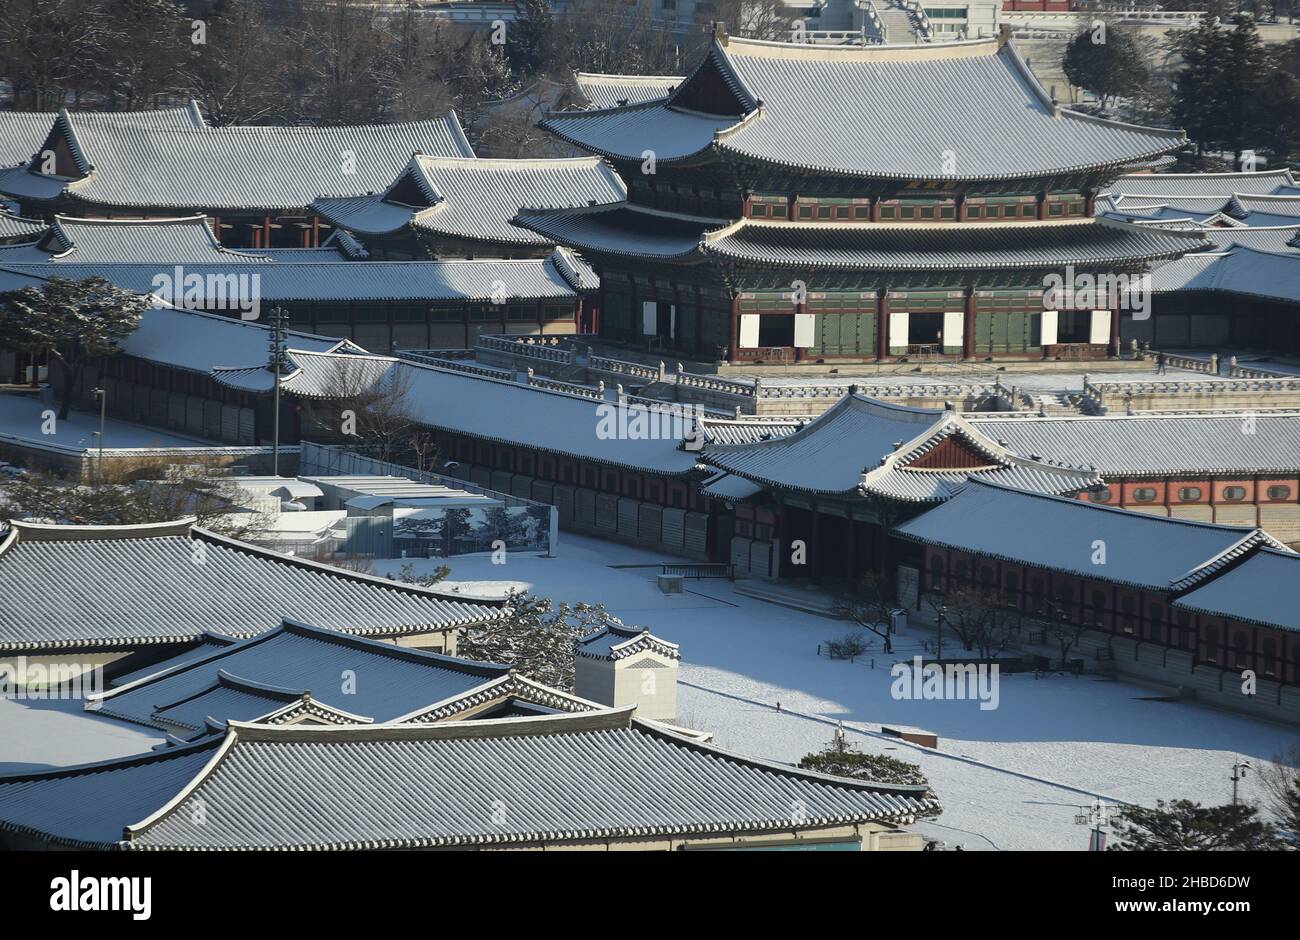 19th décembre 2021.Palais Gyeongbok dans la neige le palais Gyeongbok, le palais principal de la dynastie Joseon (1392-1910), est couvert de neige le 19 décembre 2021, dans le centre-ville de Séoul.Crédit : Yonhap/Newcom/Alay Live News Banque D'Images